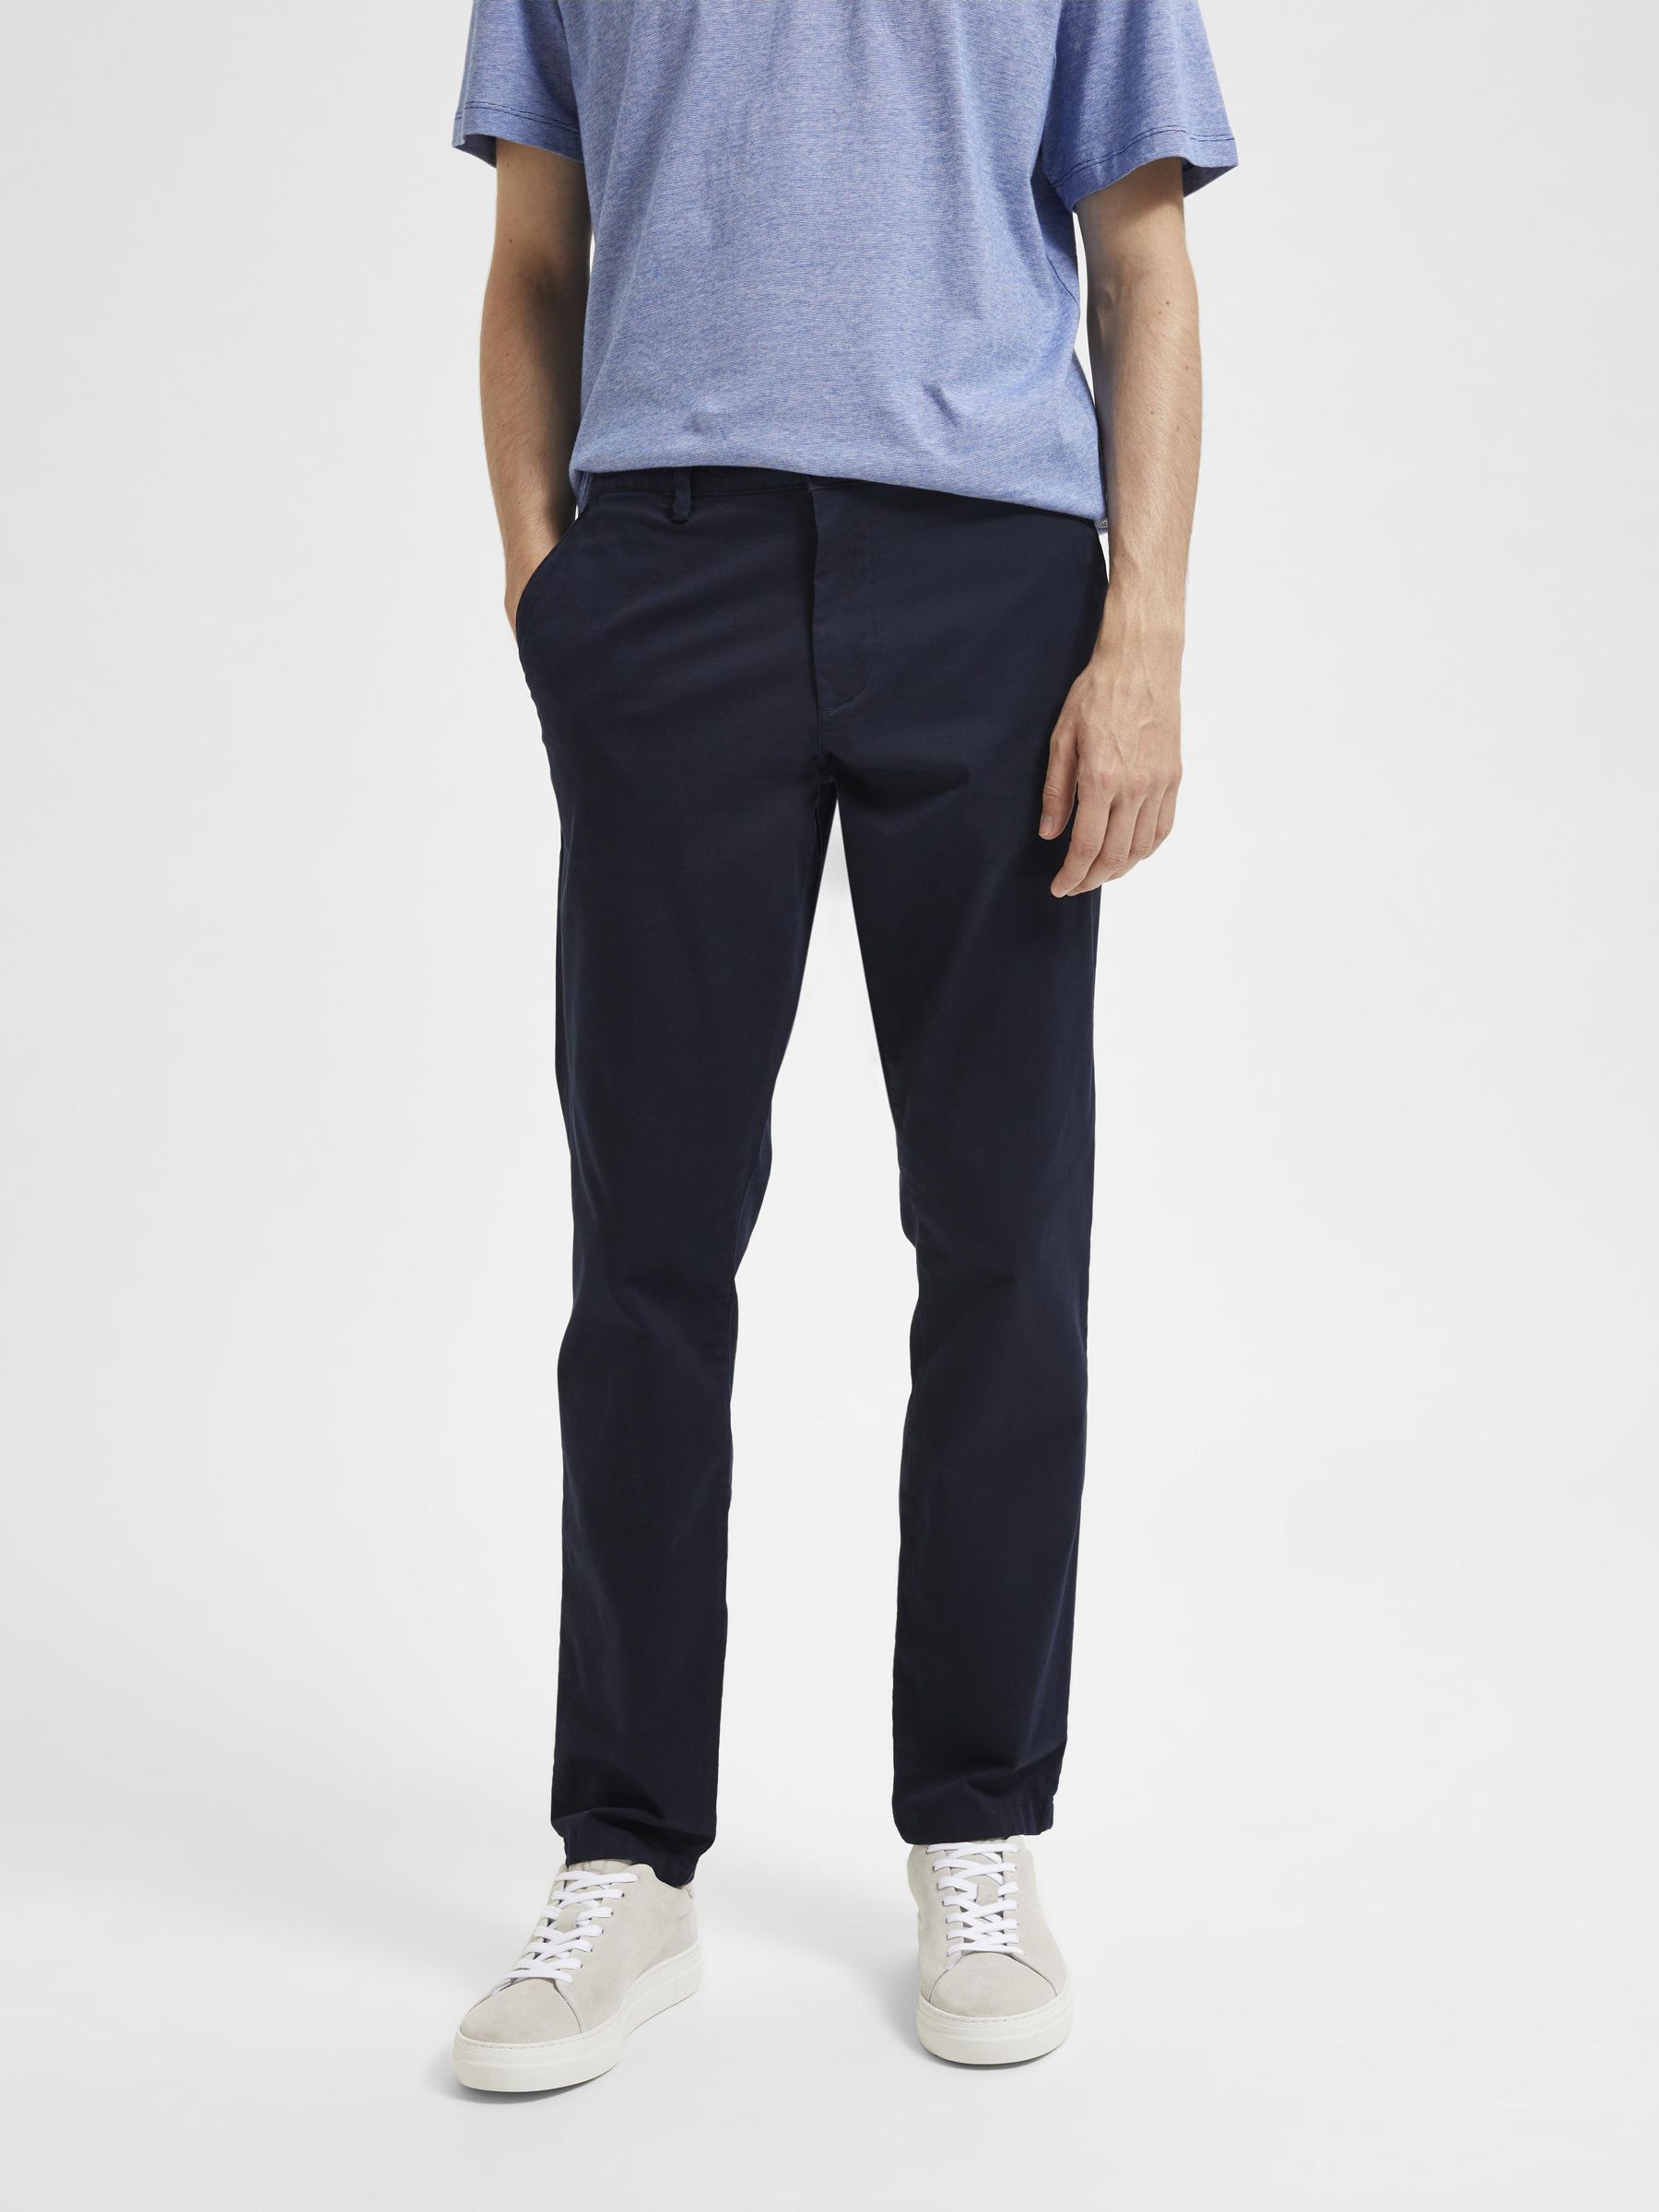 pantalons en chinos voor Nette broeken H&M Linnen Overhemd Met Korte Mouwen in het Wit voor heren Heren Kleding voor voor Broeken 